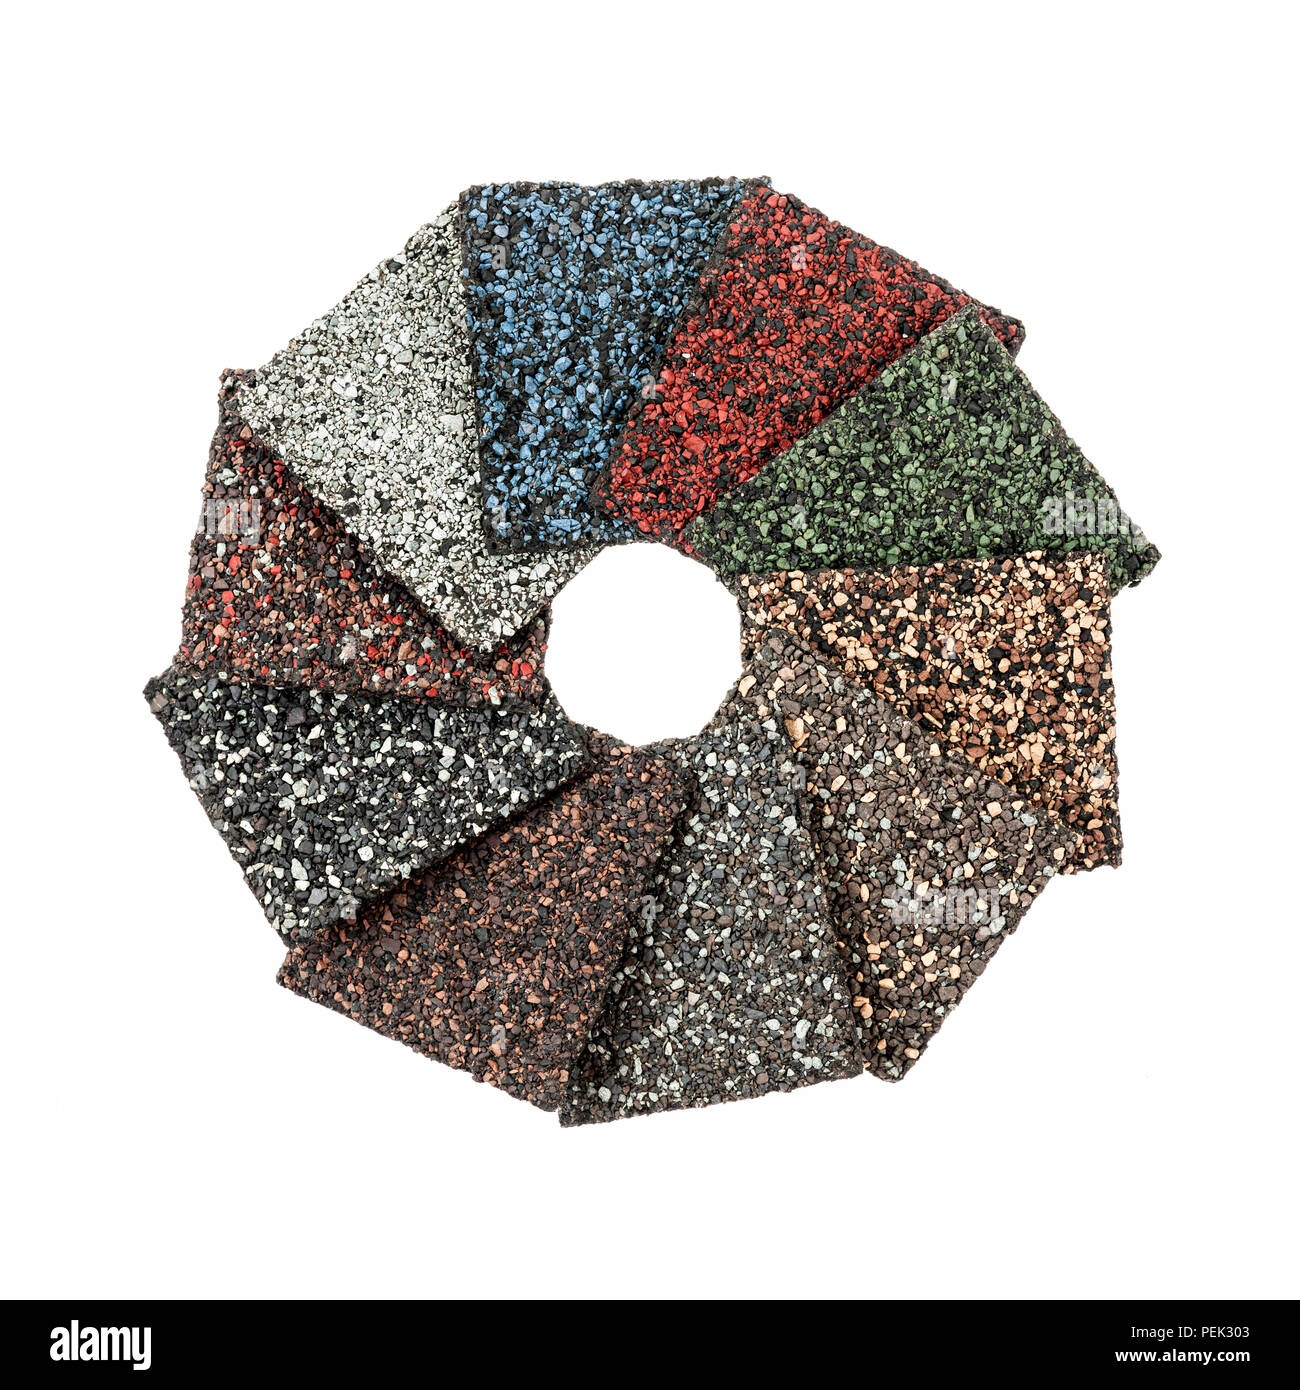 Materiales para techos tejas de asfalto muestras de distintos colores sobre fondo blanco aisladas dispuestas en círculo Foto de stock